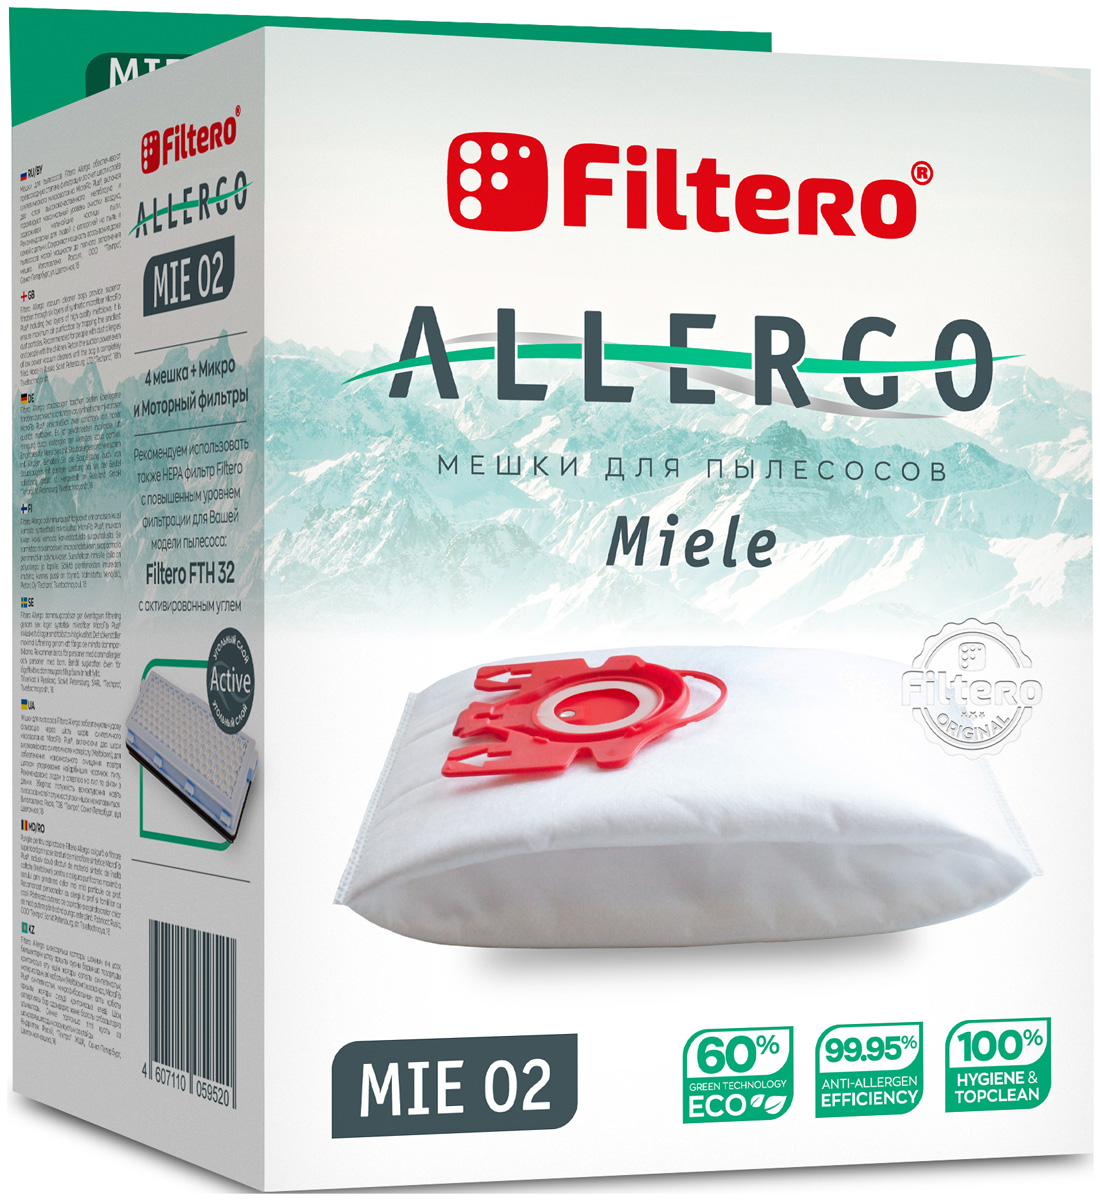 Пылесборники Filtero MIE 02 Allergo 4 шт. + моторный фильтр и микрофильтр moyki blanco legra 6 s compact